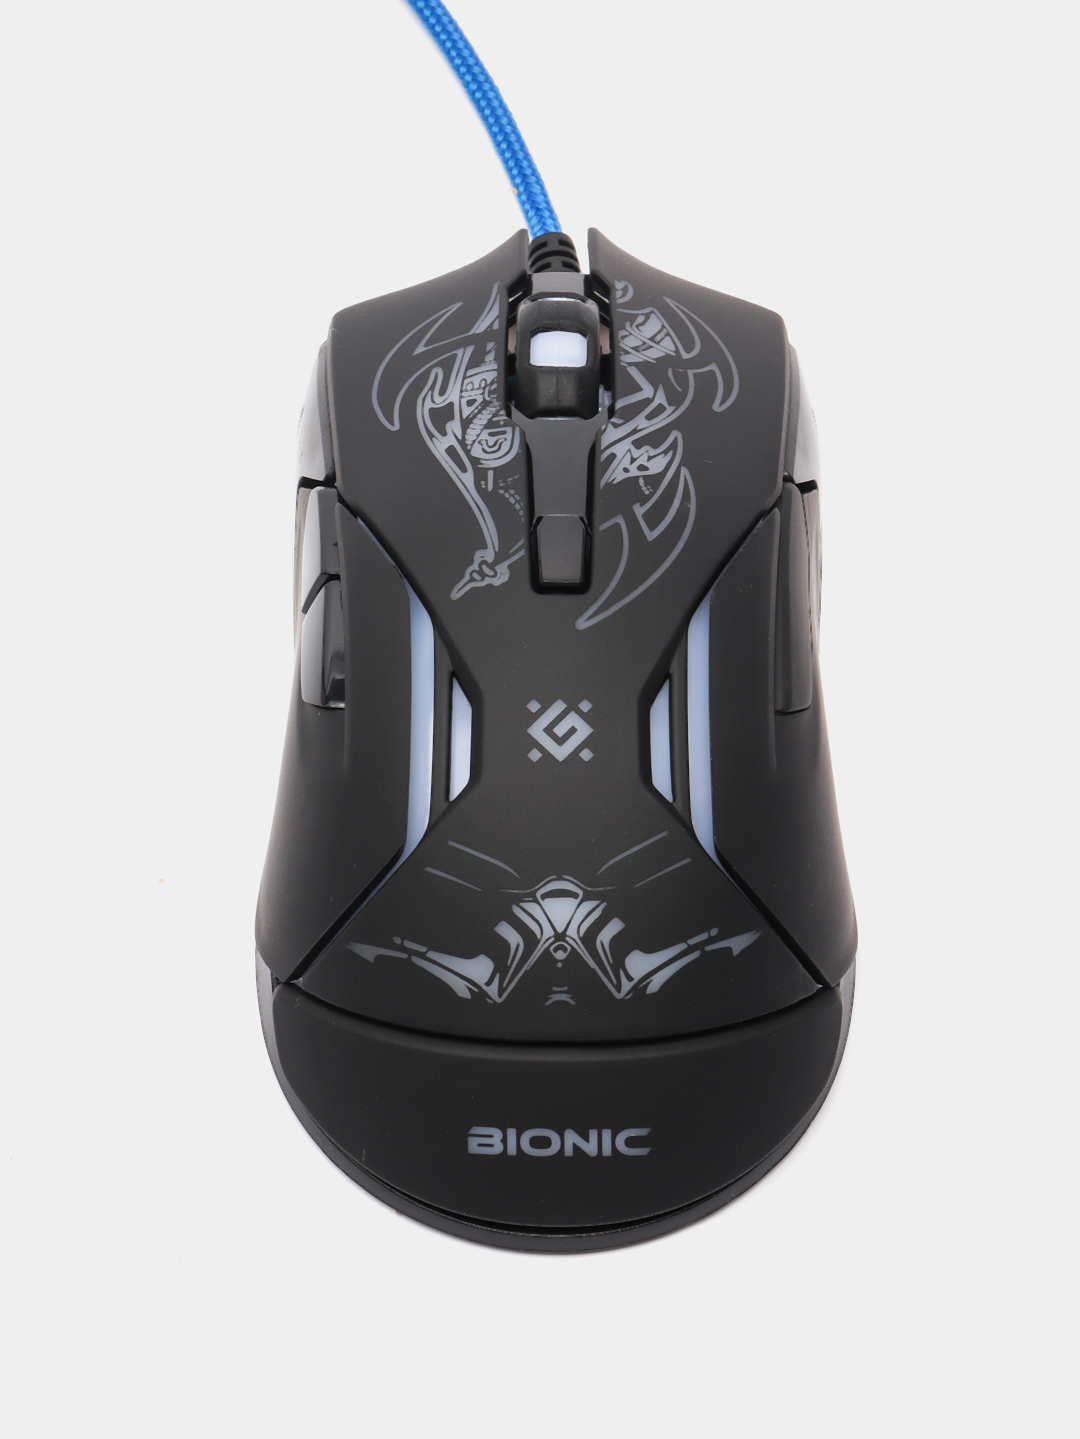 Мышь Defender Bionic GM-250l. Проводная мышь Defender Skull GM-180l оптика,6кнопок,800-3200dpi игровая 1,5m, USB. Defender мышь игровая Bionic GM-250l 6кн. 3200dpi + коврик. Игровая мышка Дефендер с подсветкой.